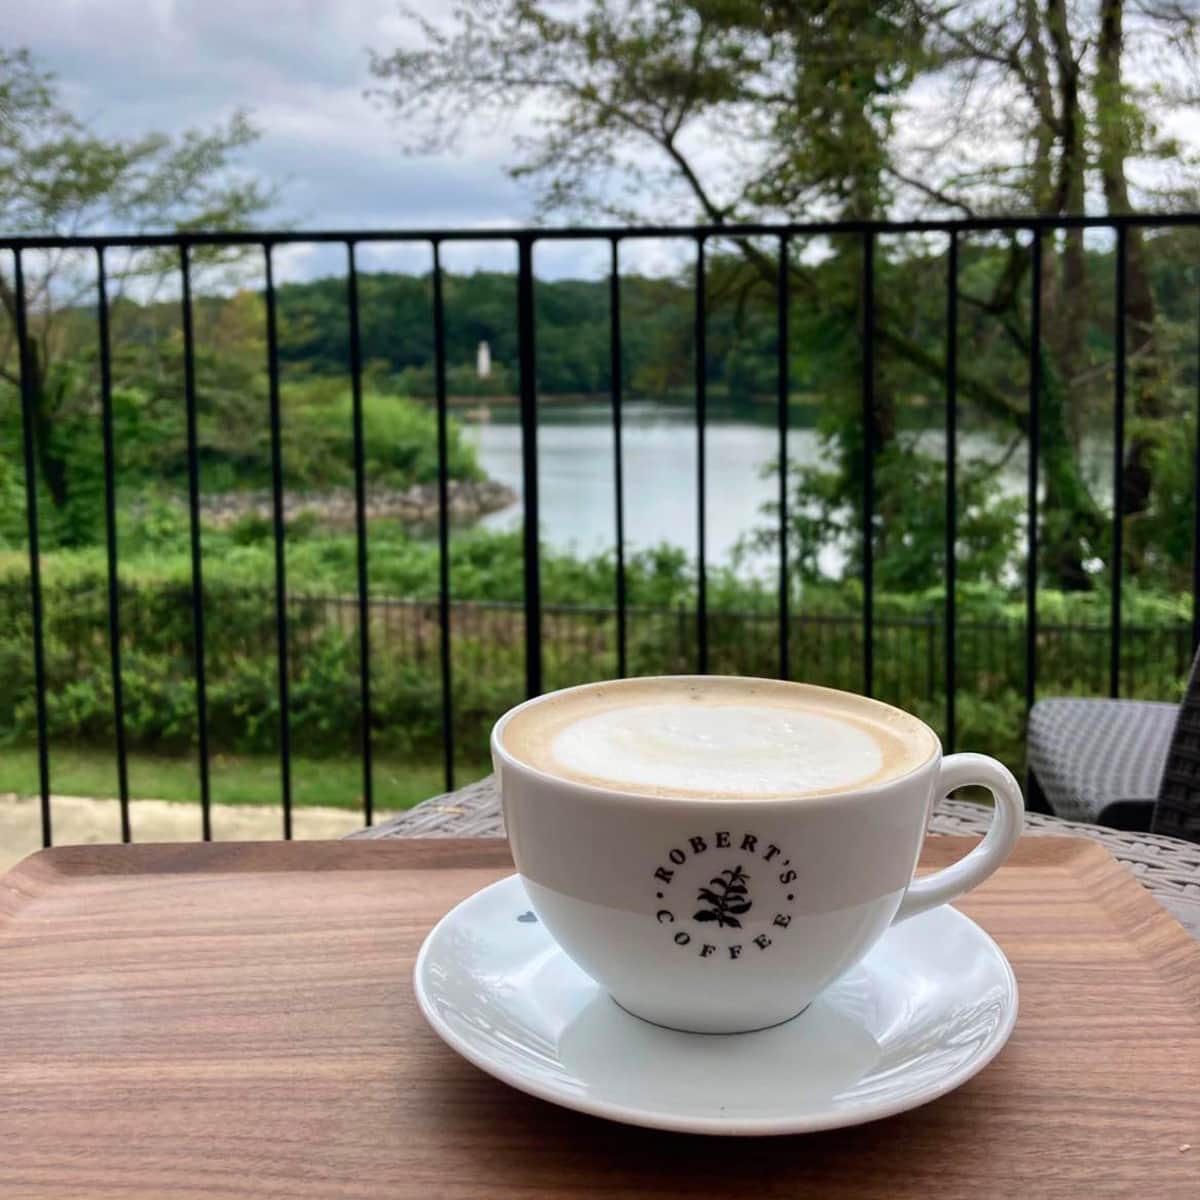 メッツァビレッジのロバーツコーヒーでは、湖と森の絶景を眺めながらコーヒーが飲めて、まさにフィンランドにいるかのよう。